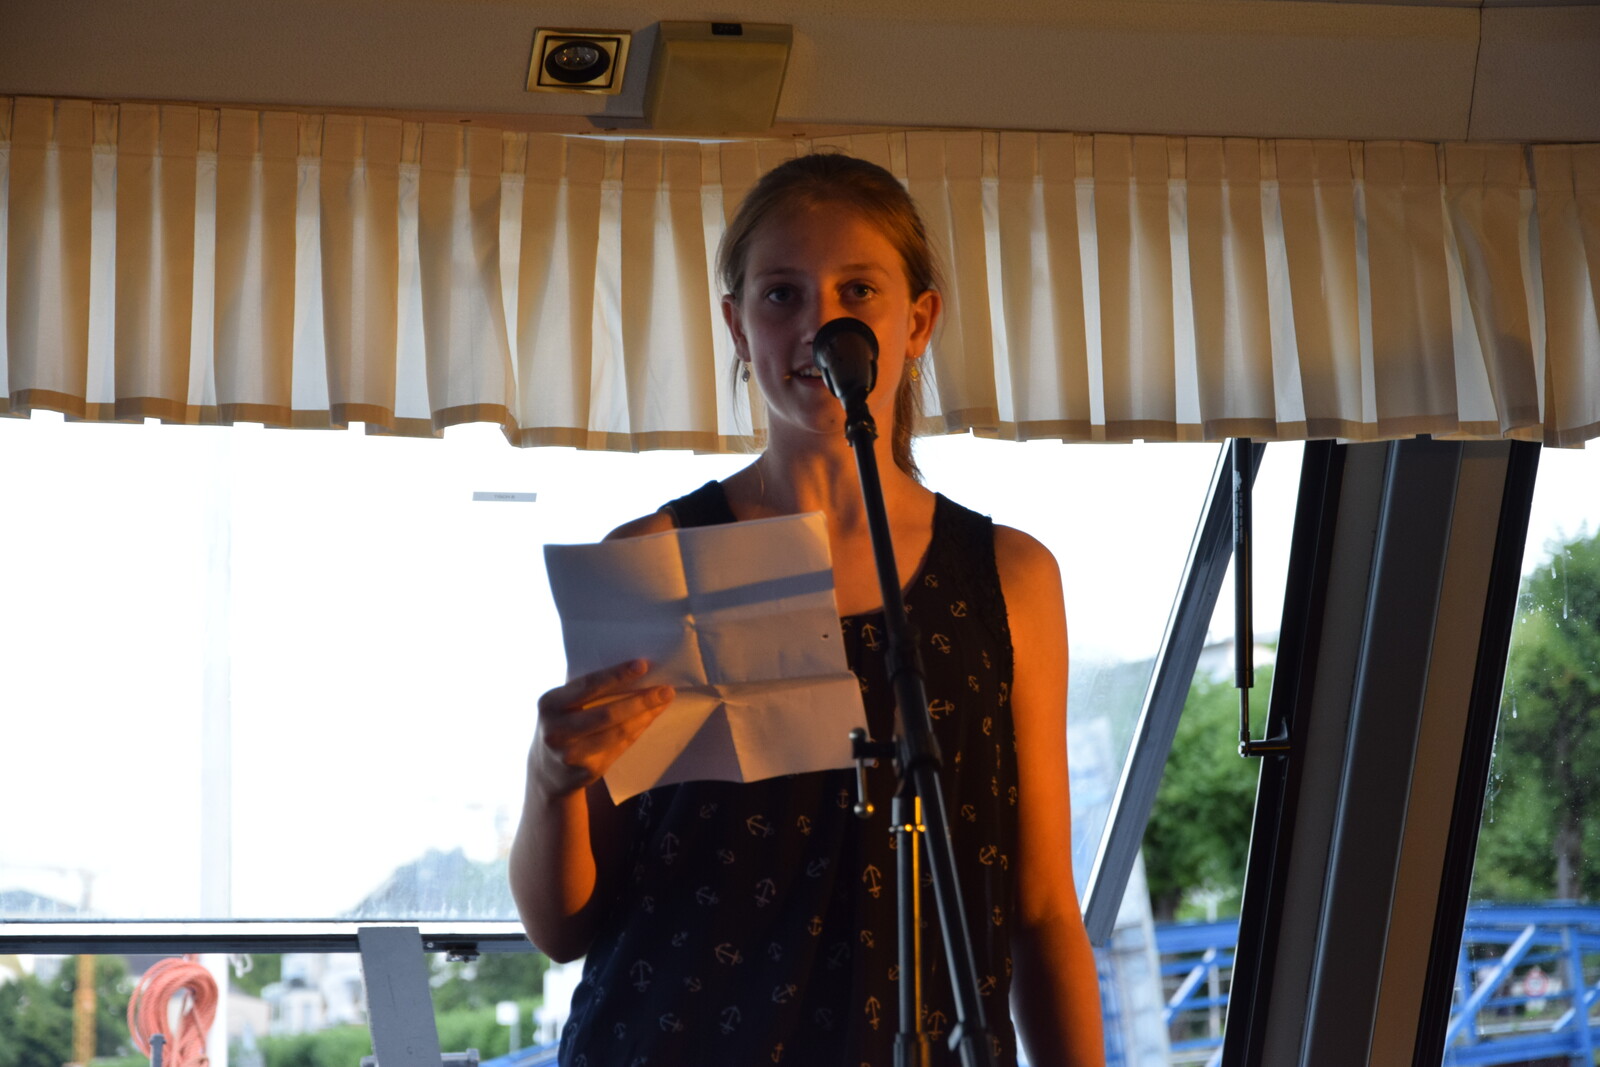 Lisa aus Paderborn hatte als jüngste Teilnehmerin an diesem Abend ihren ersten Auftritt von einem großen Publikum.